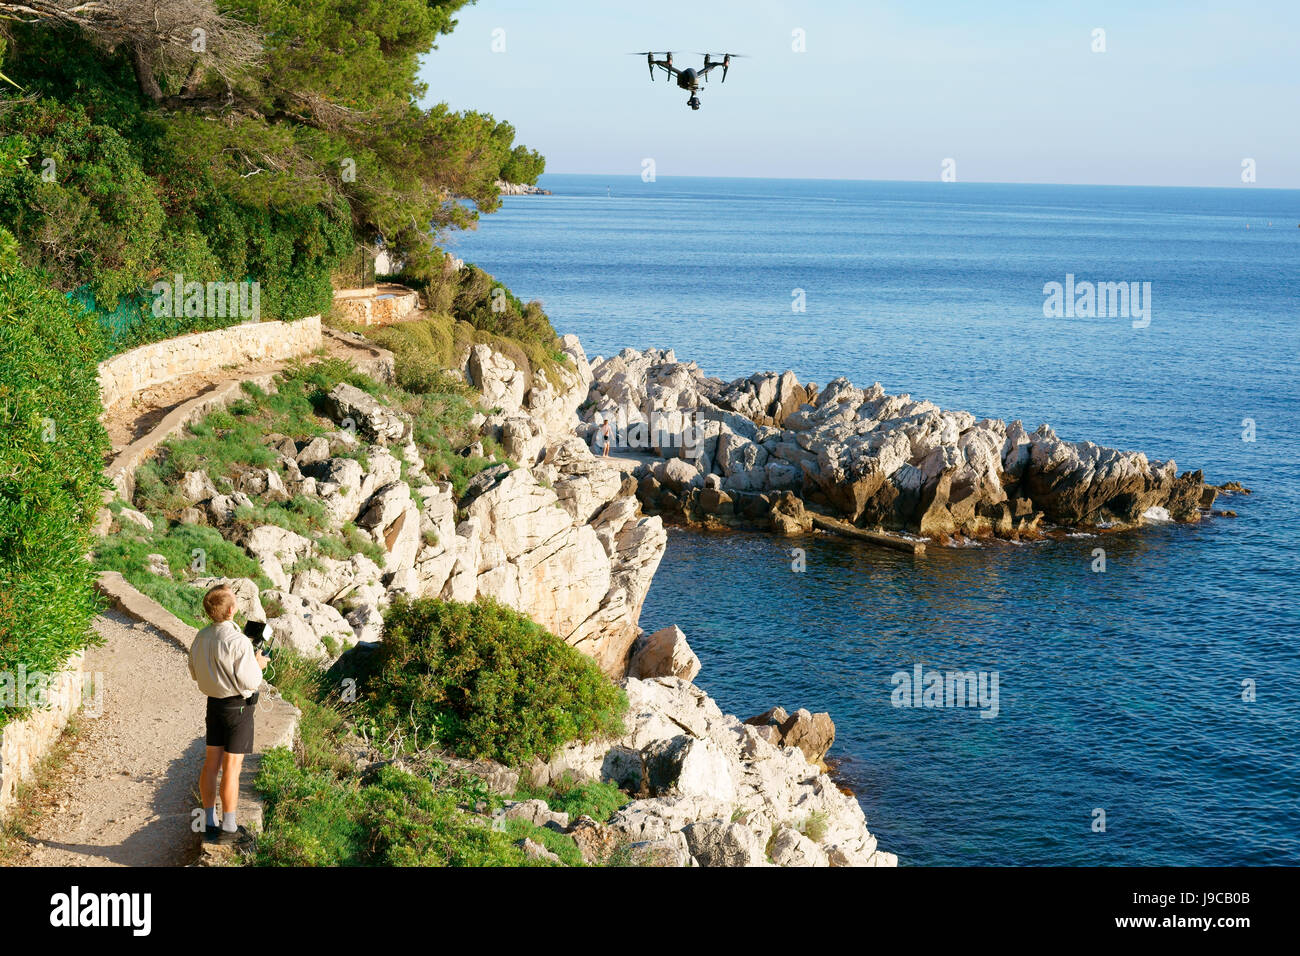 Homme volant d'un véhicule aérien sans pilote (drone). Saint-Jean-Cap-Ferrat, Côte d'Azur, Provence-Alpes-Côte d'Azur, France. Banque D'Images